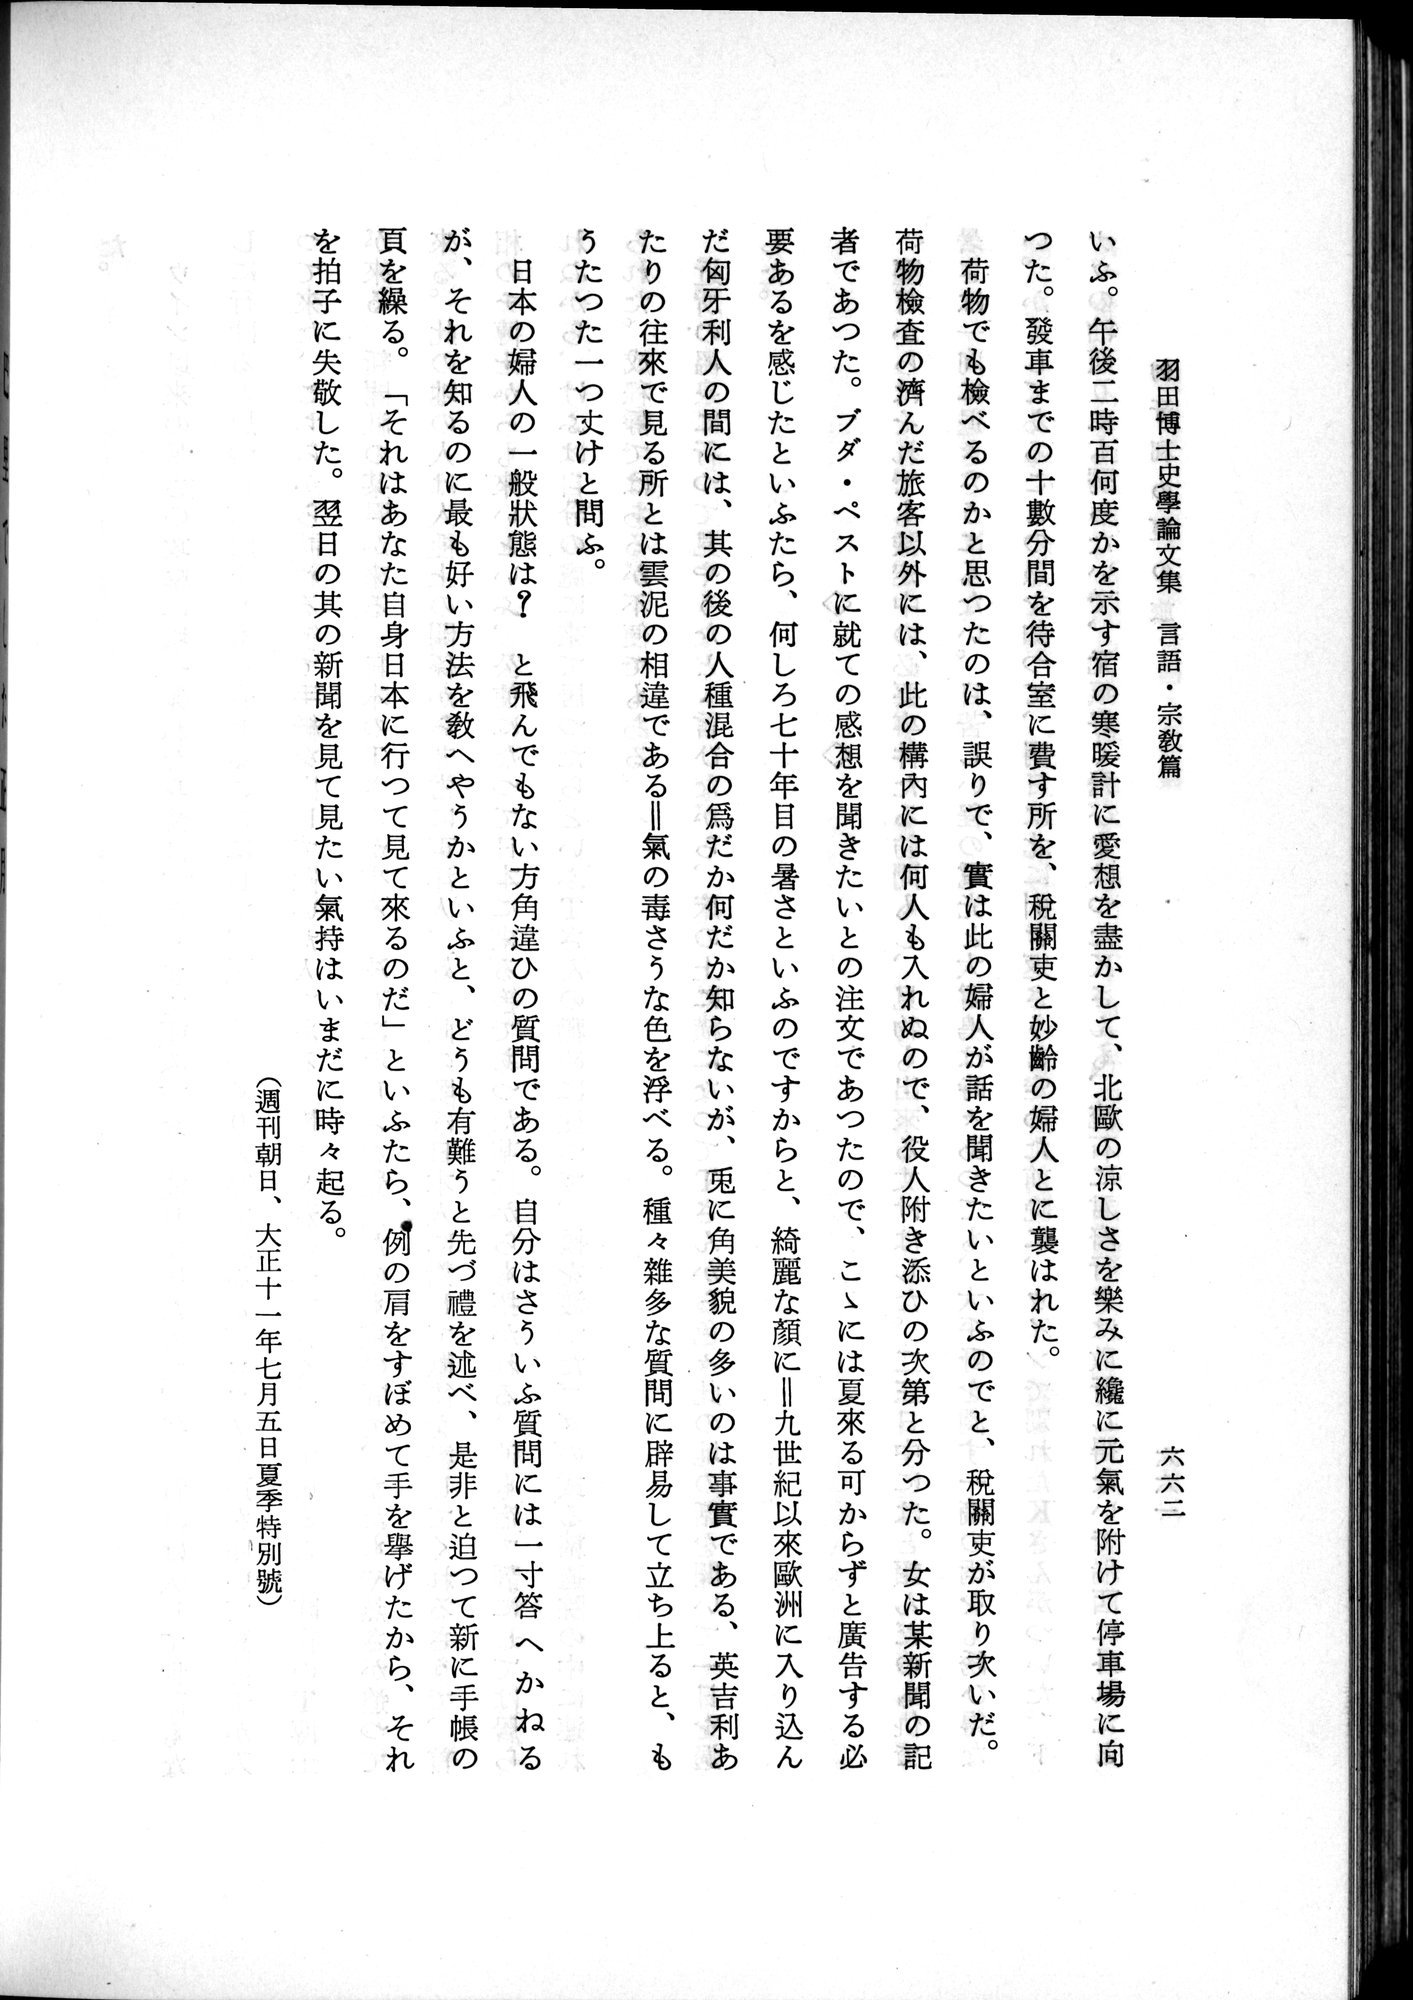 羽田博士史学論文集 : vol.2 / 726 ページ（白黒高解像度画像）